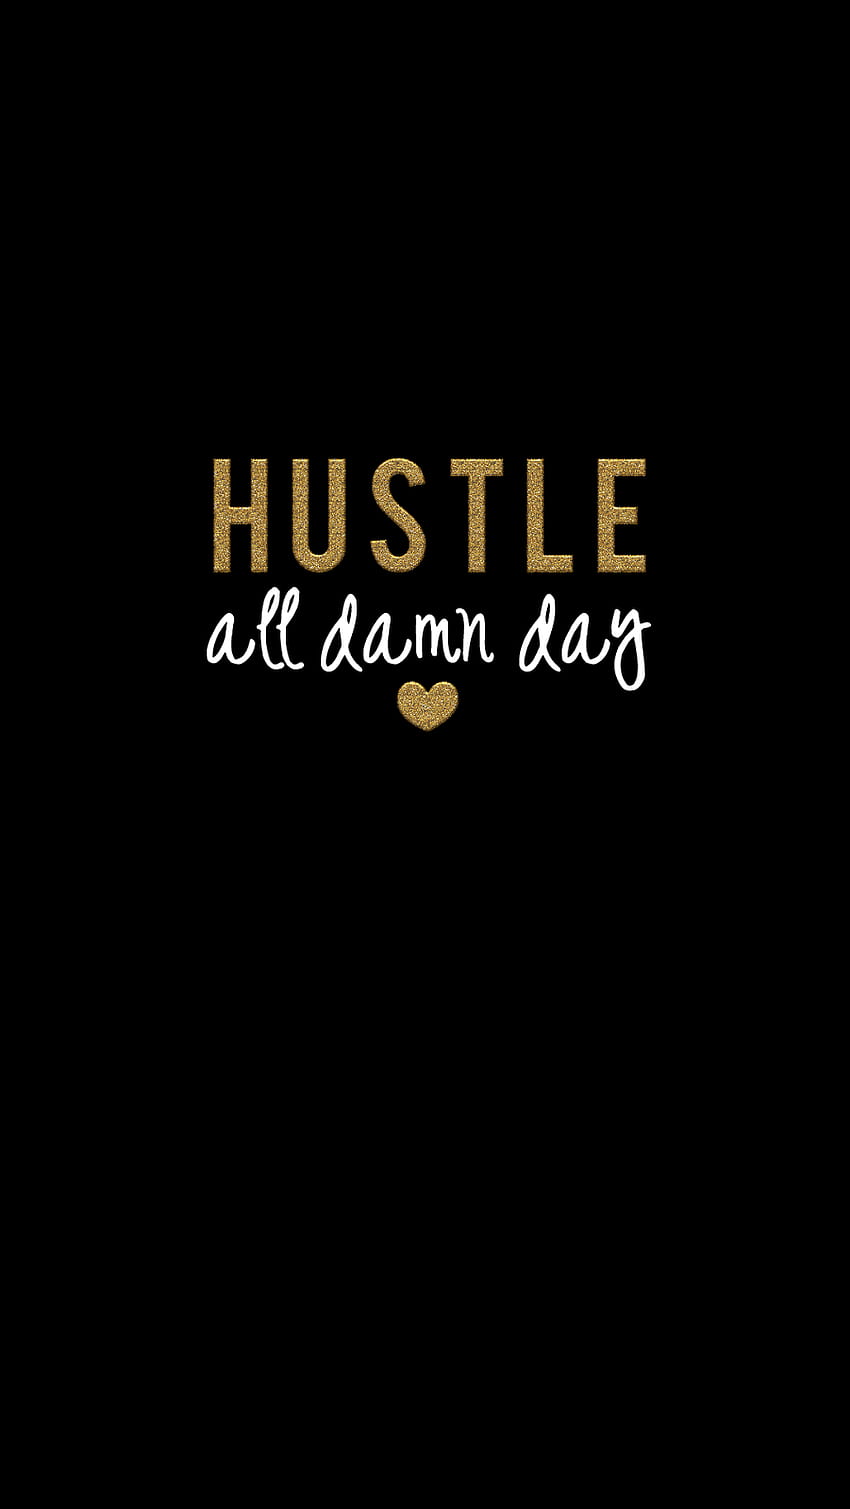 Hustle, Hustle Hard HD phone wallpaper | Pxfuel